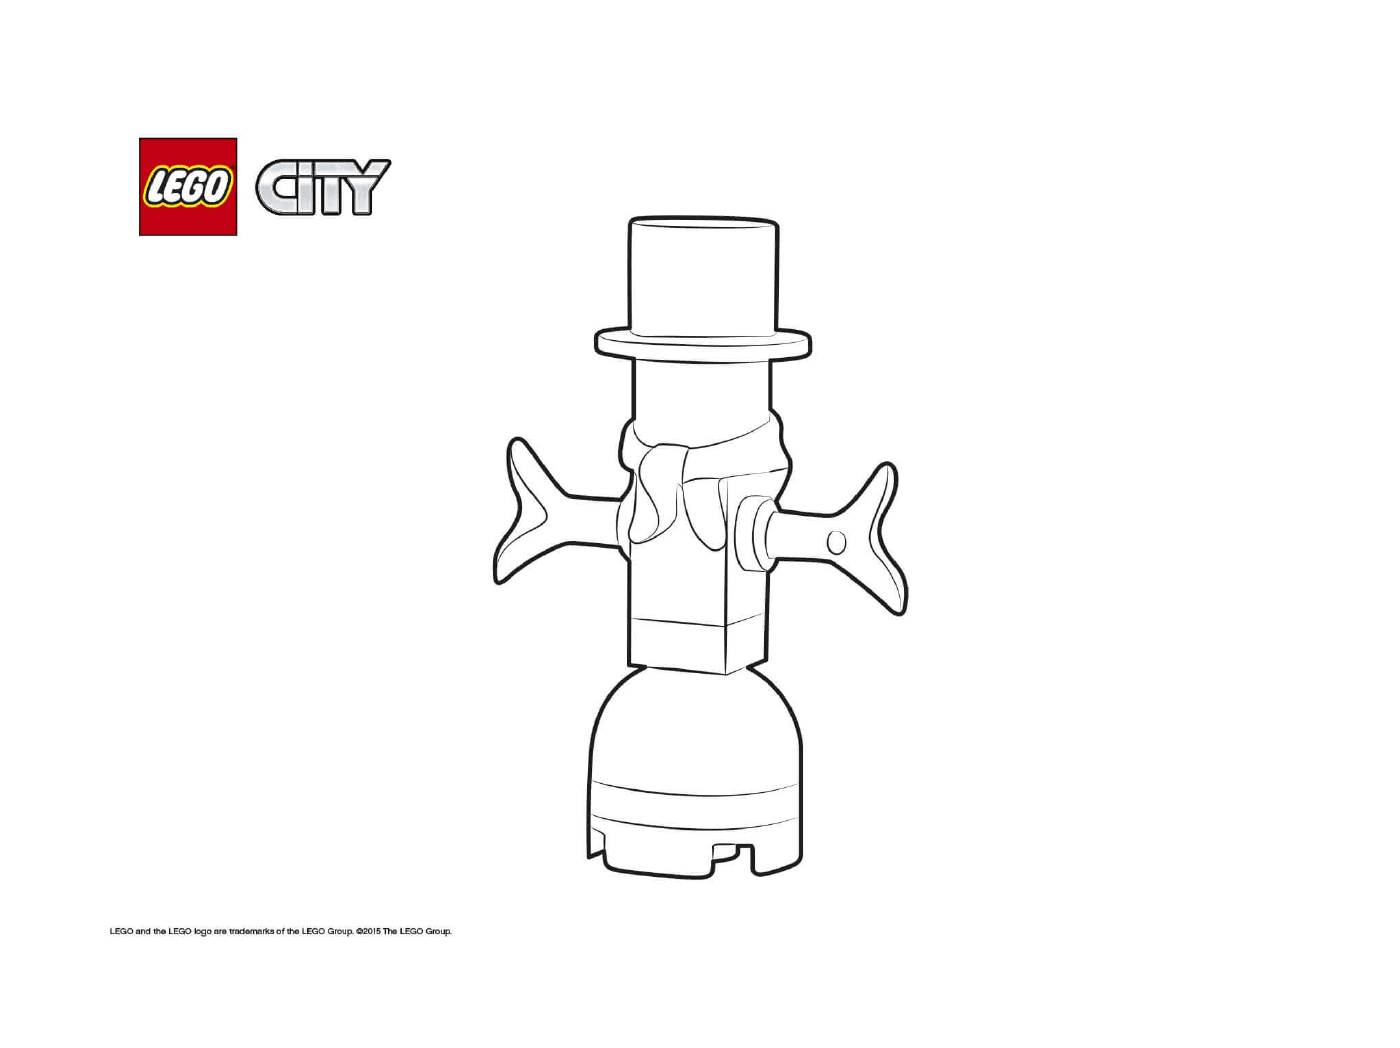  Calendario della città di Lego dell'Avvento 